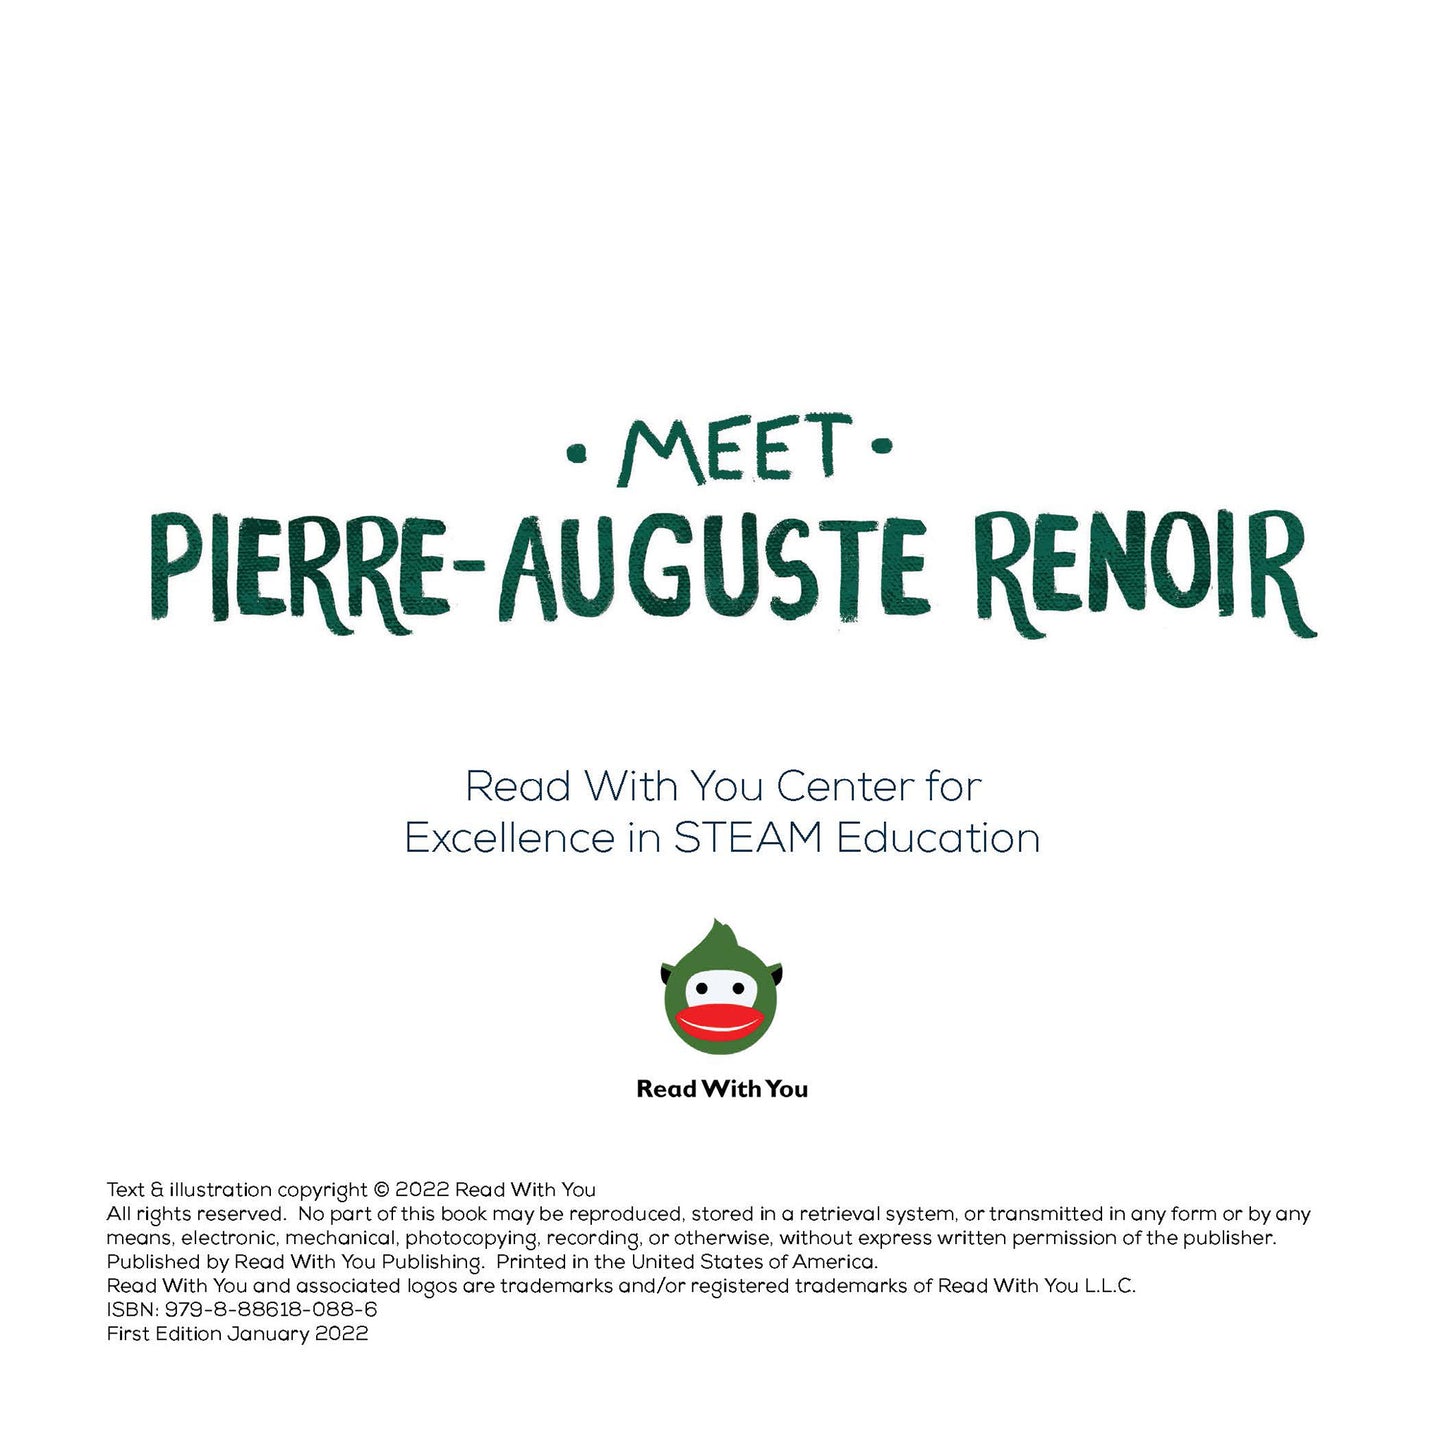 Meet Pierre-Auguste Renoir